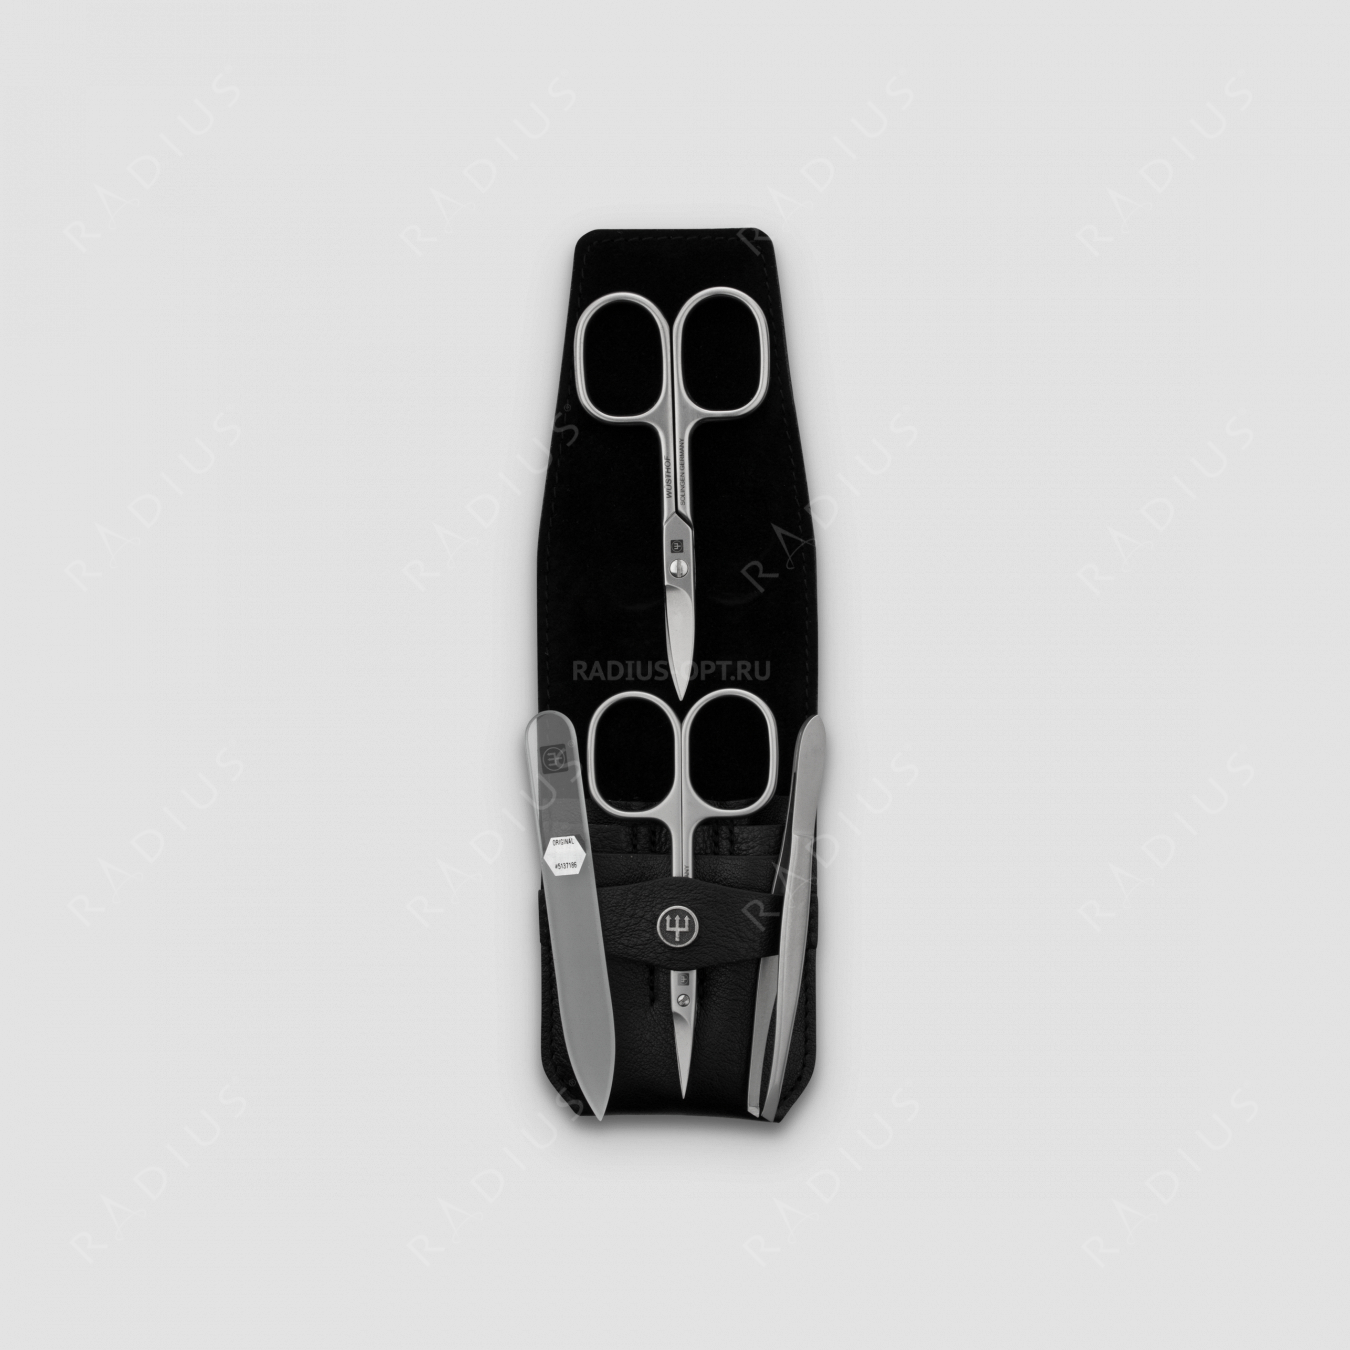 Набор маникюрный 4 предмета в кожаном футляре, цвет черный, сатин, серия Manicure sets, WUESTHOF, Германия